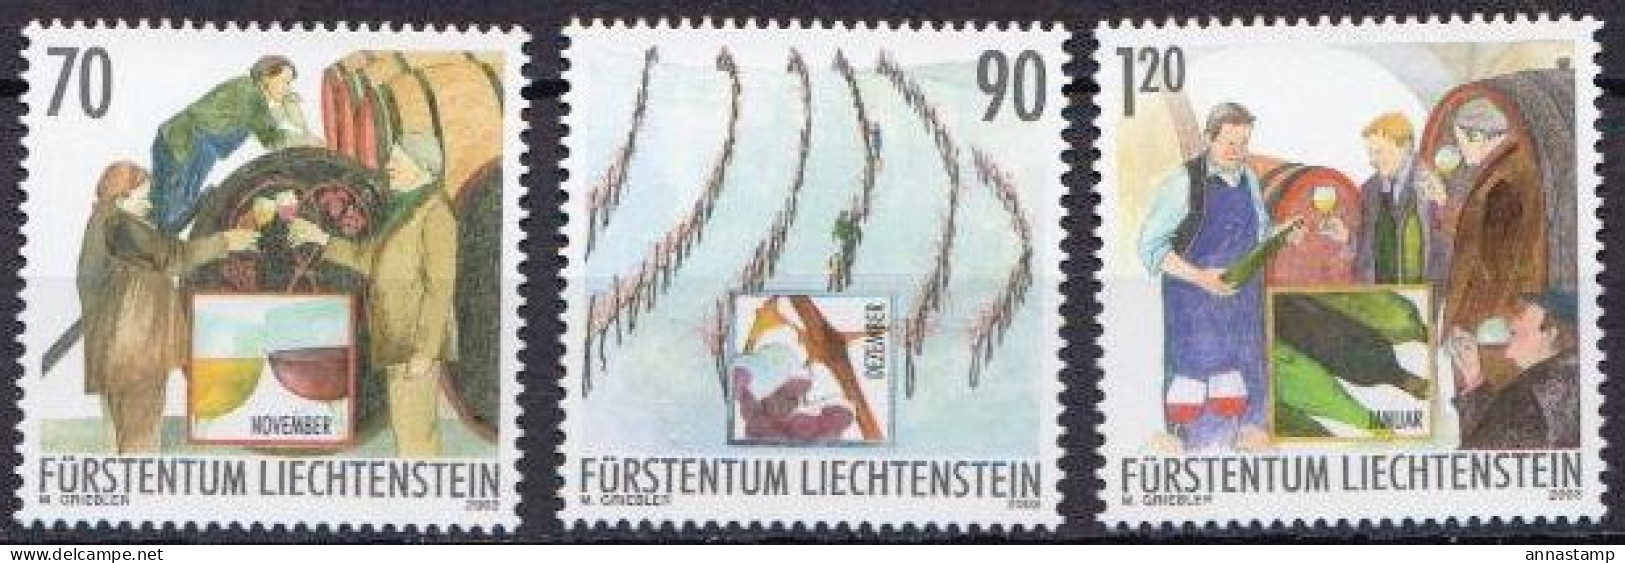 Liechtenstein MNH Sets - Fruits